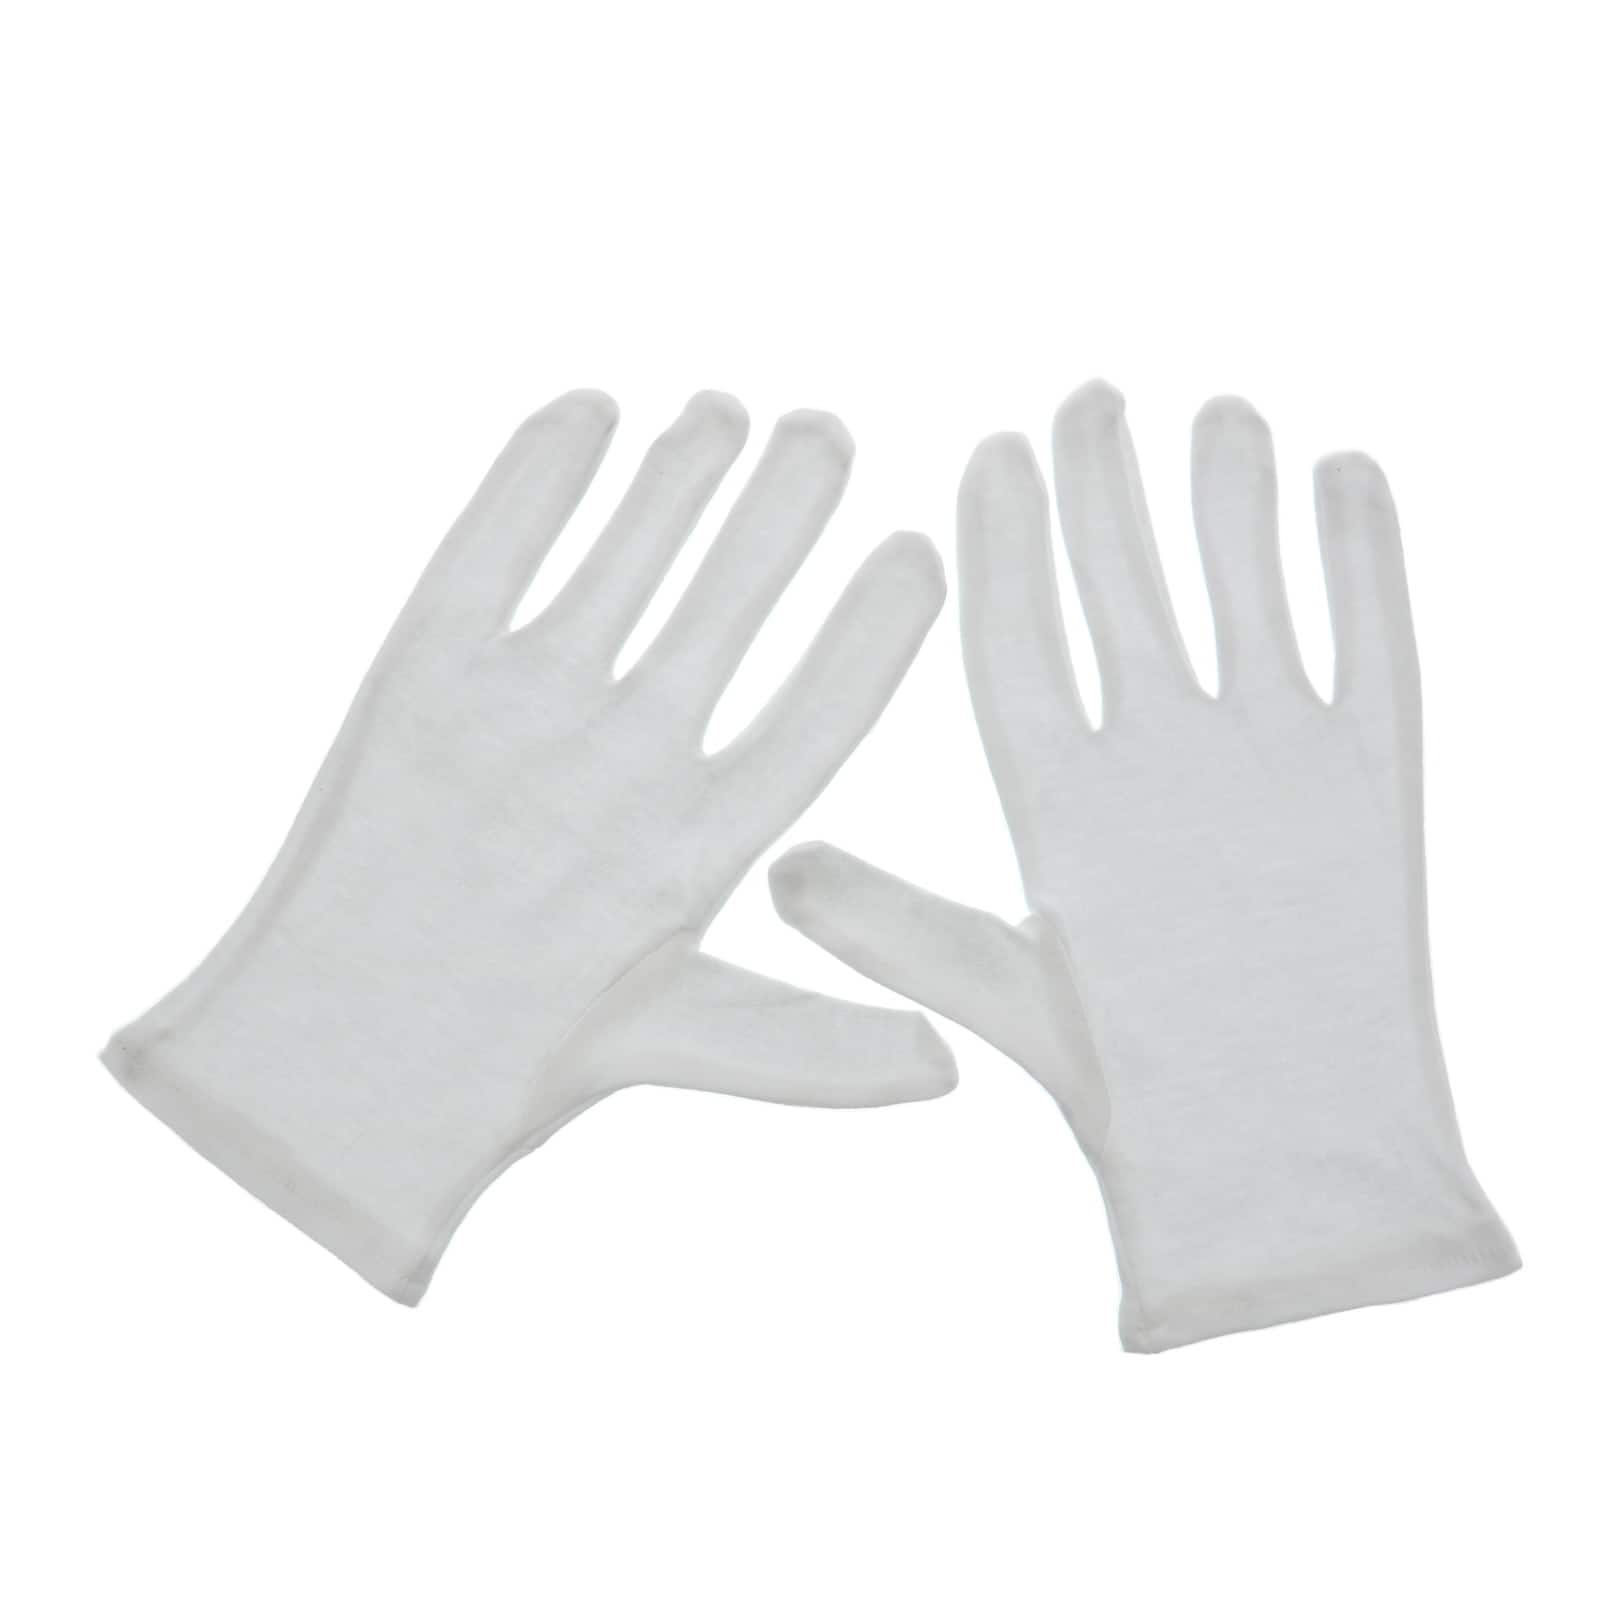 20 Packs: 4 ct. (80 total) Art Alternatives Soft White Cotton Gloves